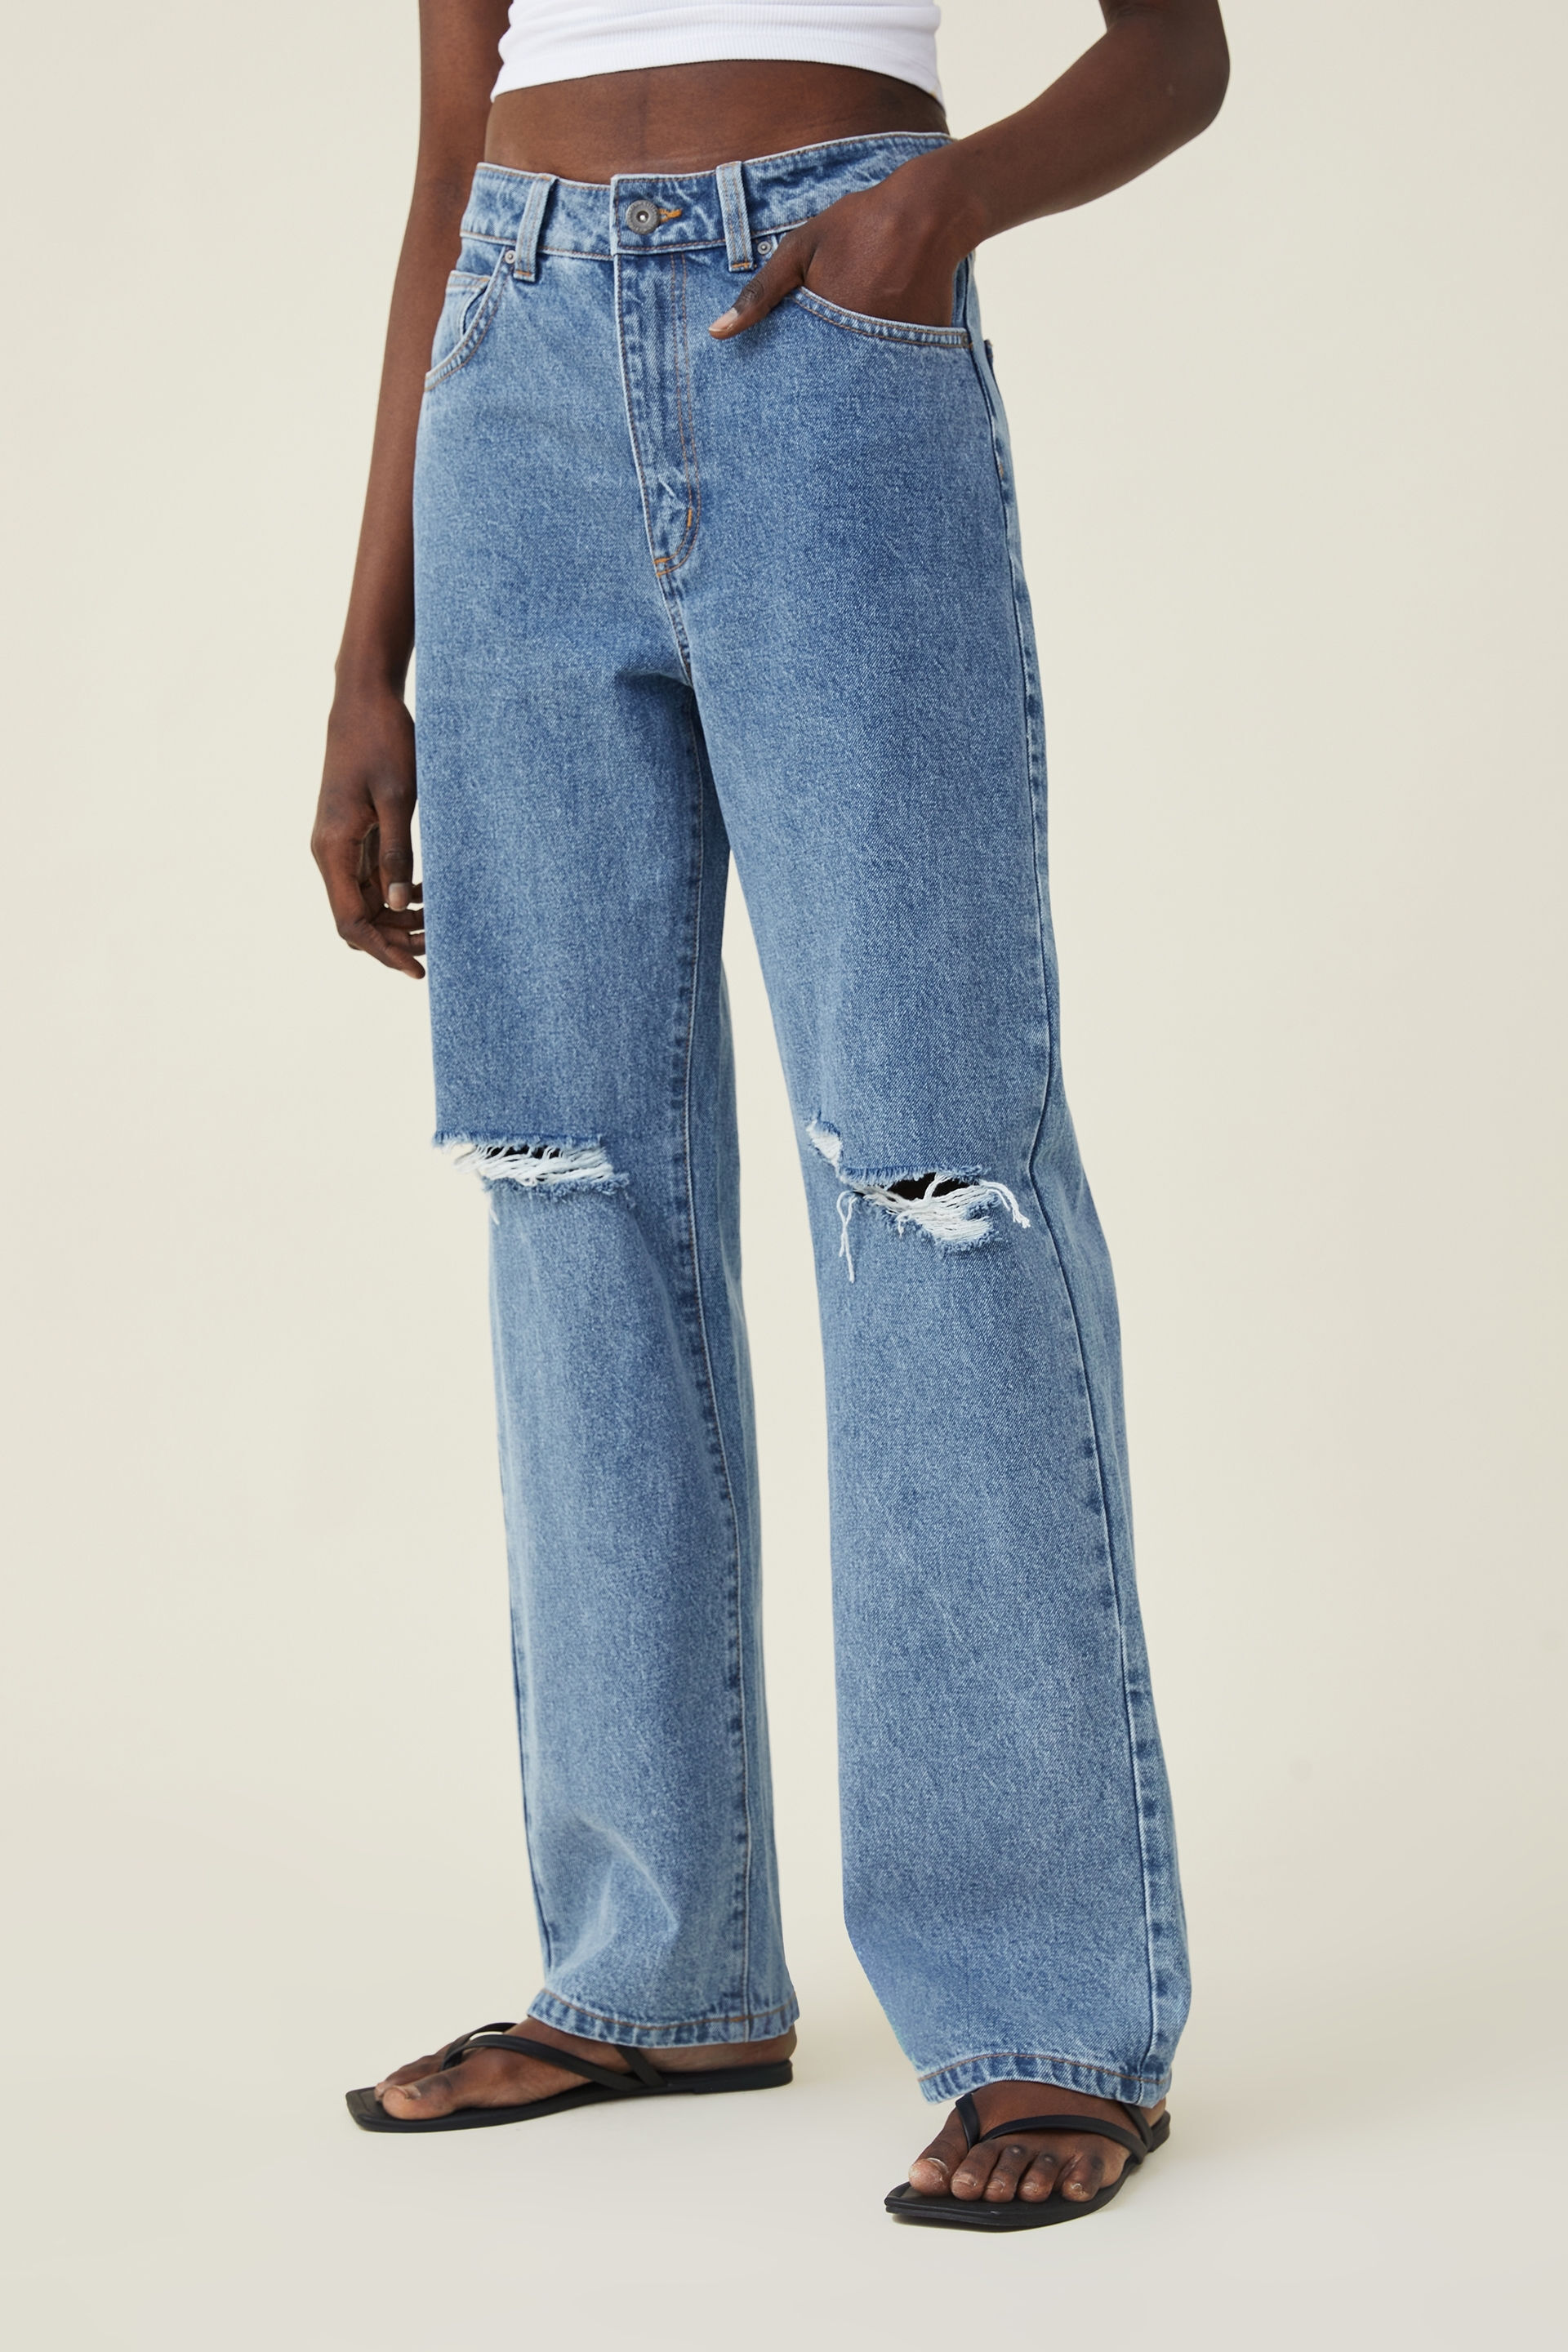 discount 71% Blue 36                  EU Zara boyfriend jeans WOMEN FASHION Jeans Boyfriend jeans Worn-in 